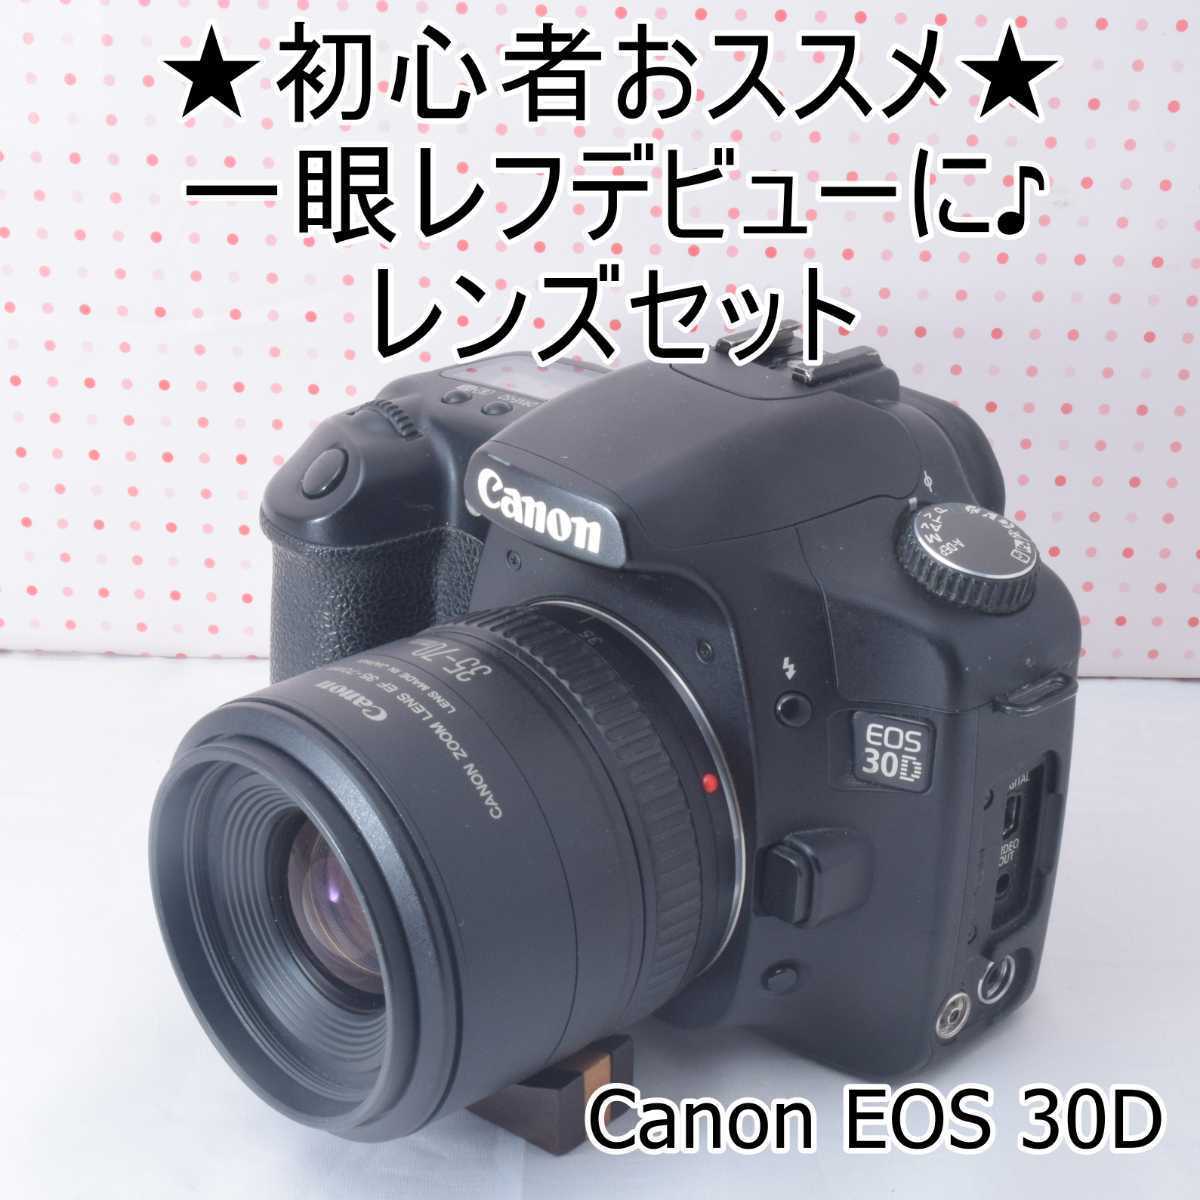 ⭐️キャノン Canon20D 連写OK⭐️キャノン デジタル一眼レフ⭐️03